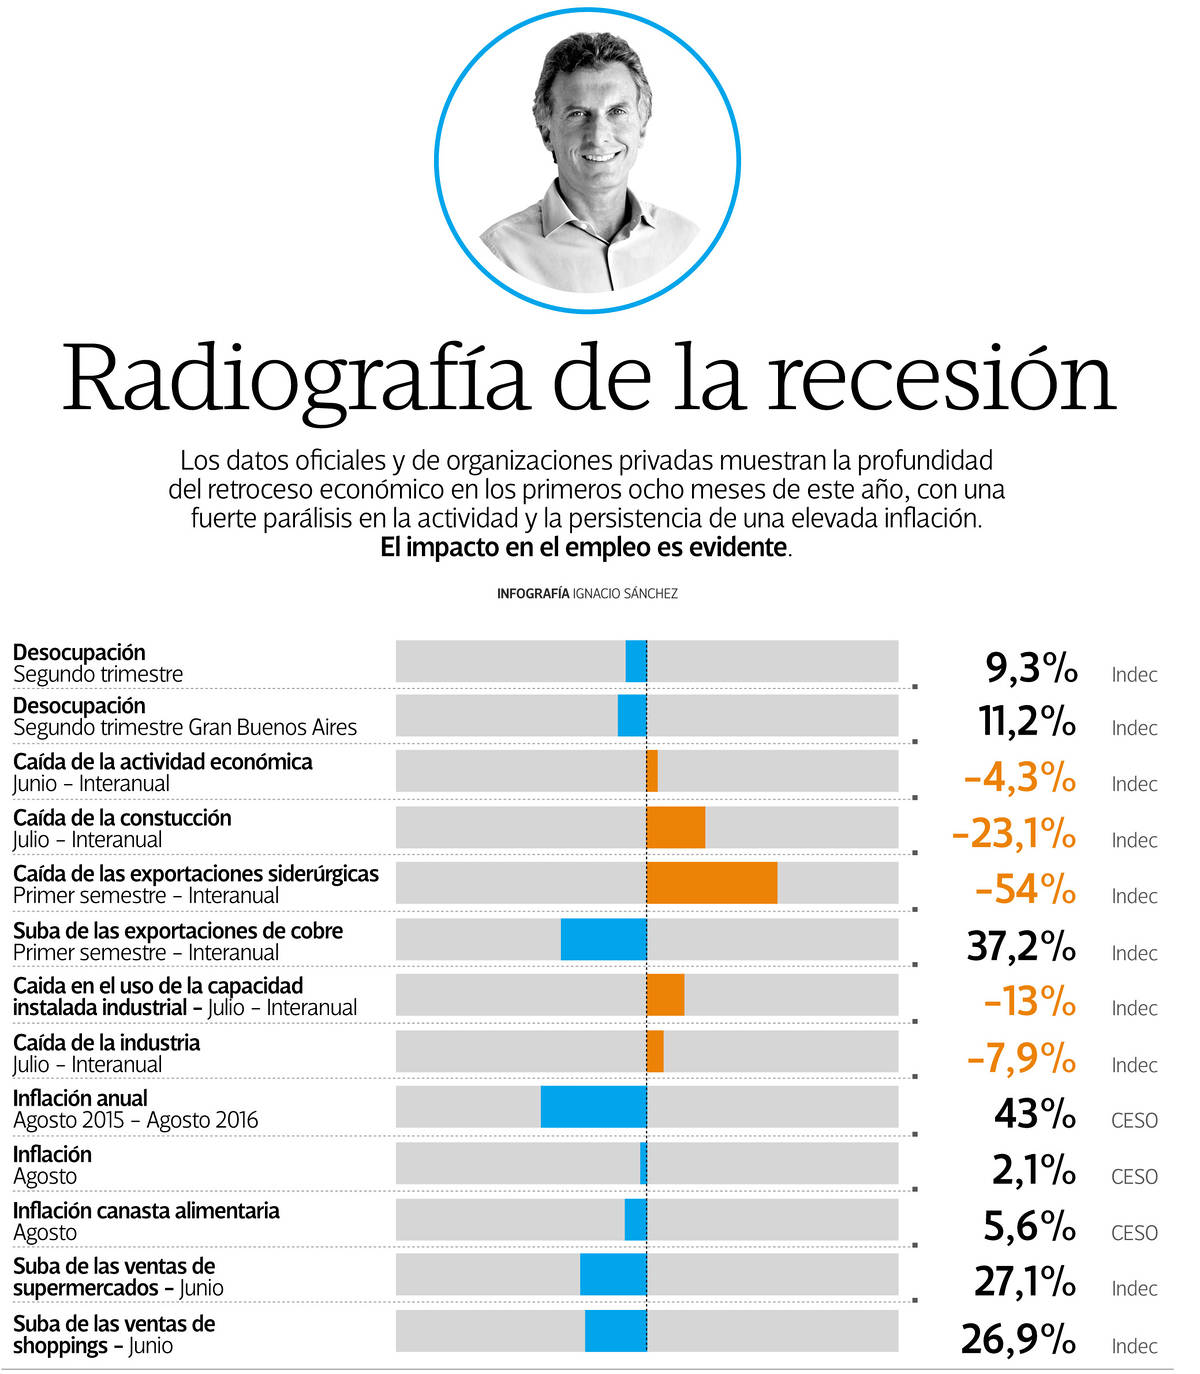 Radiografía de la recesión